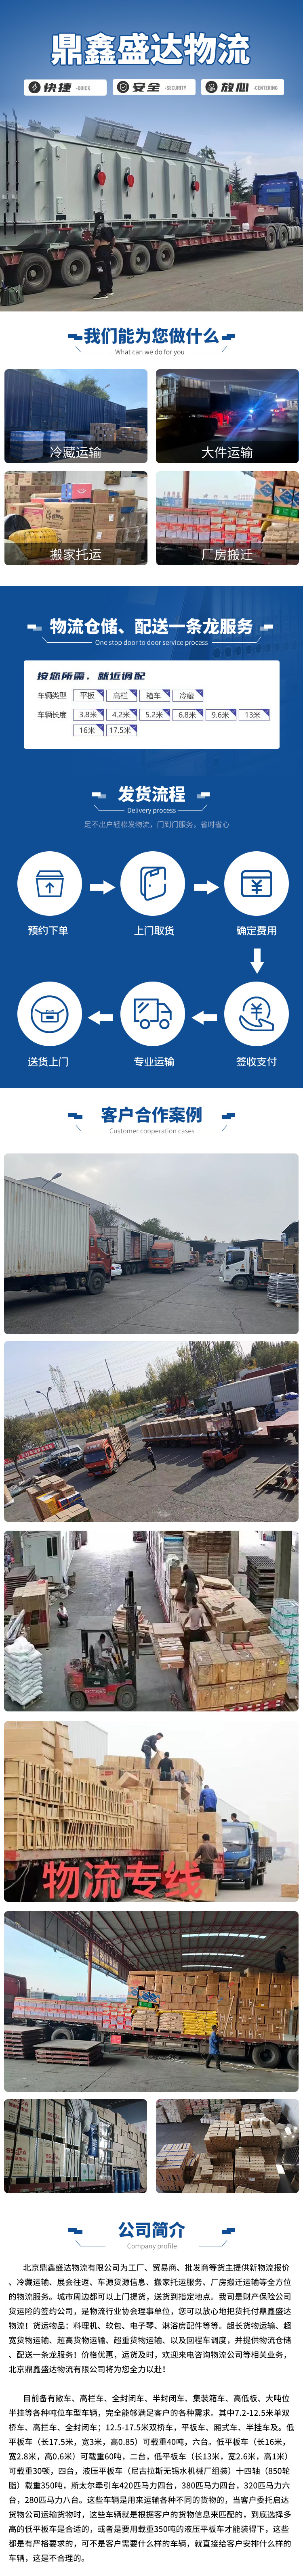 北京到海口轿车物流运输